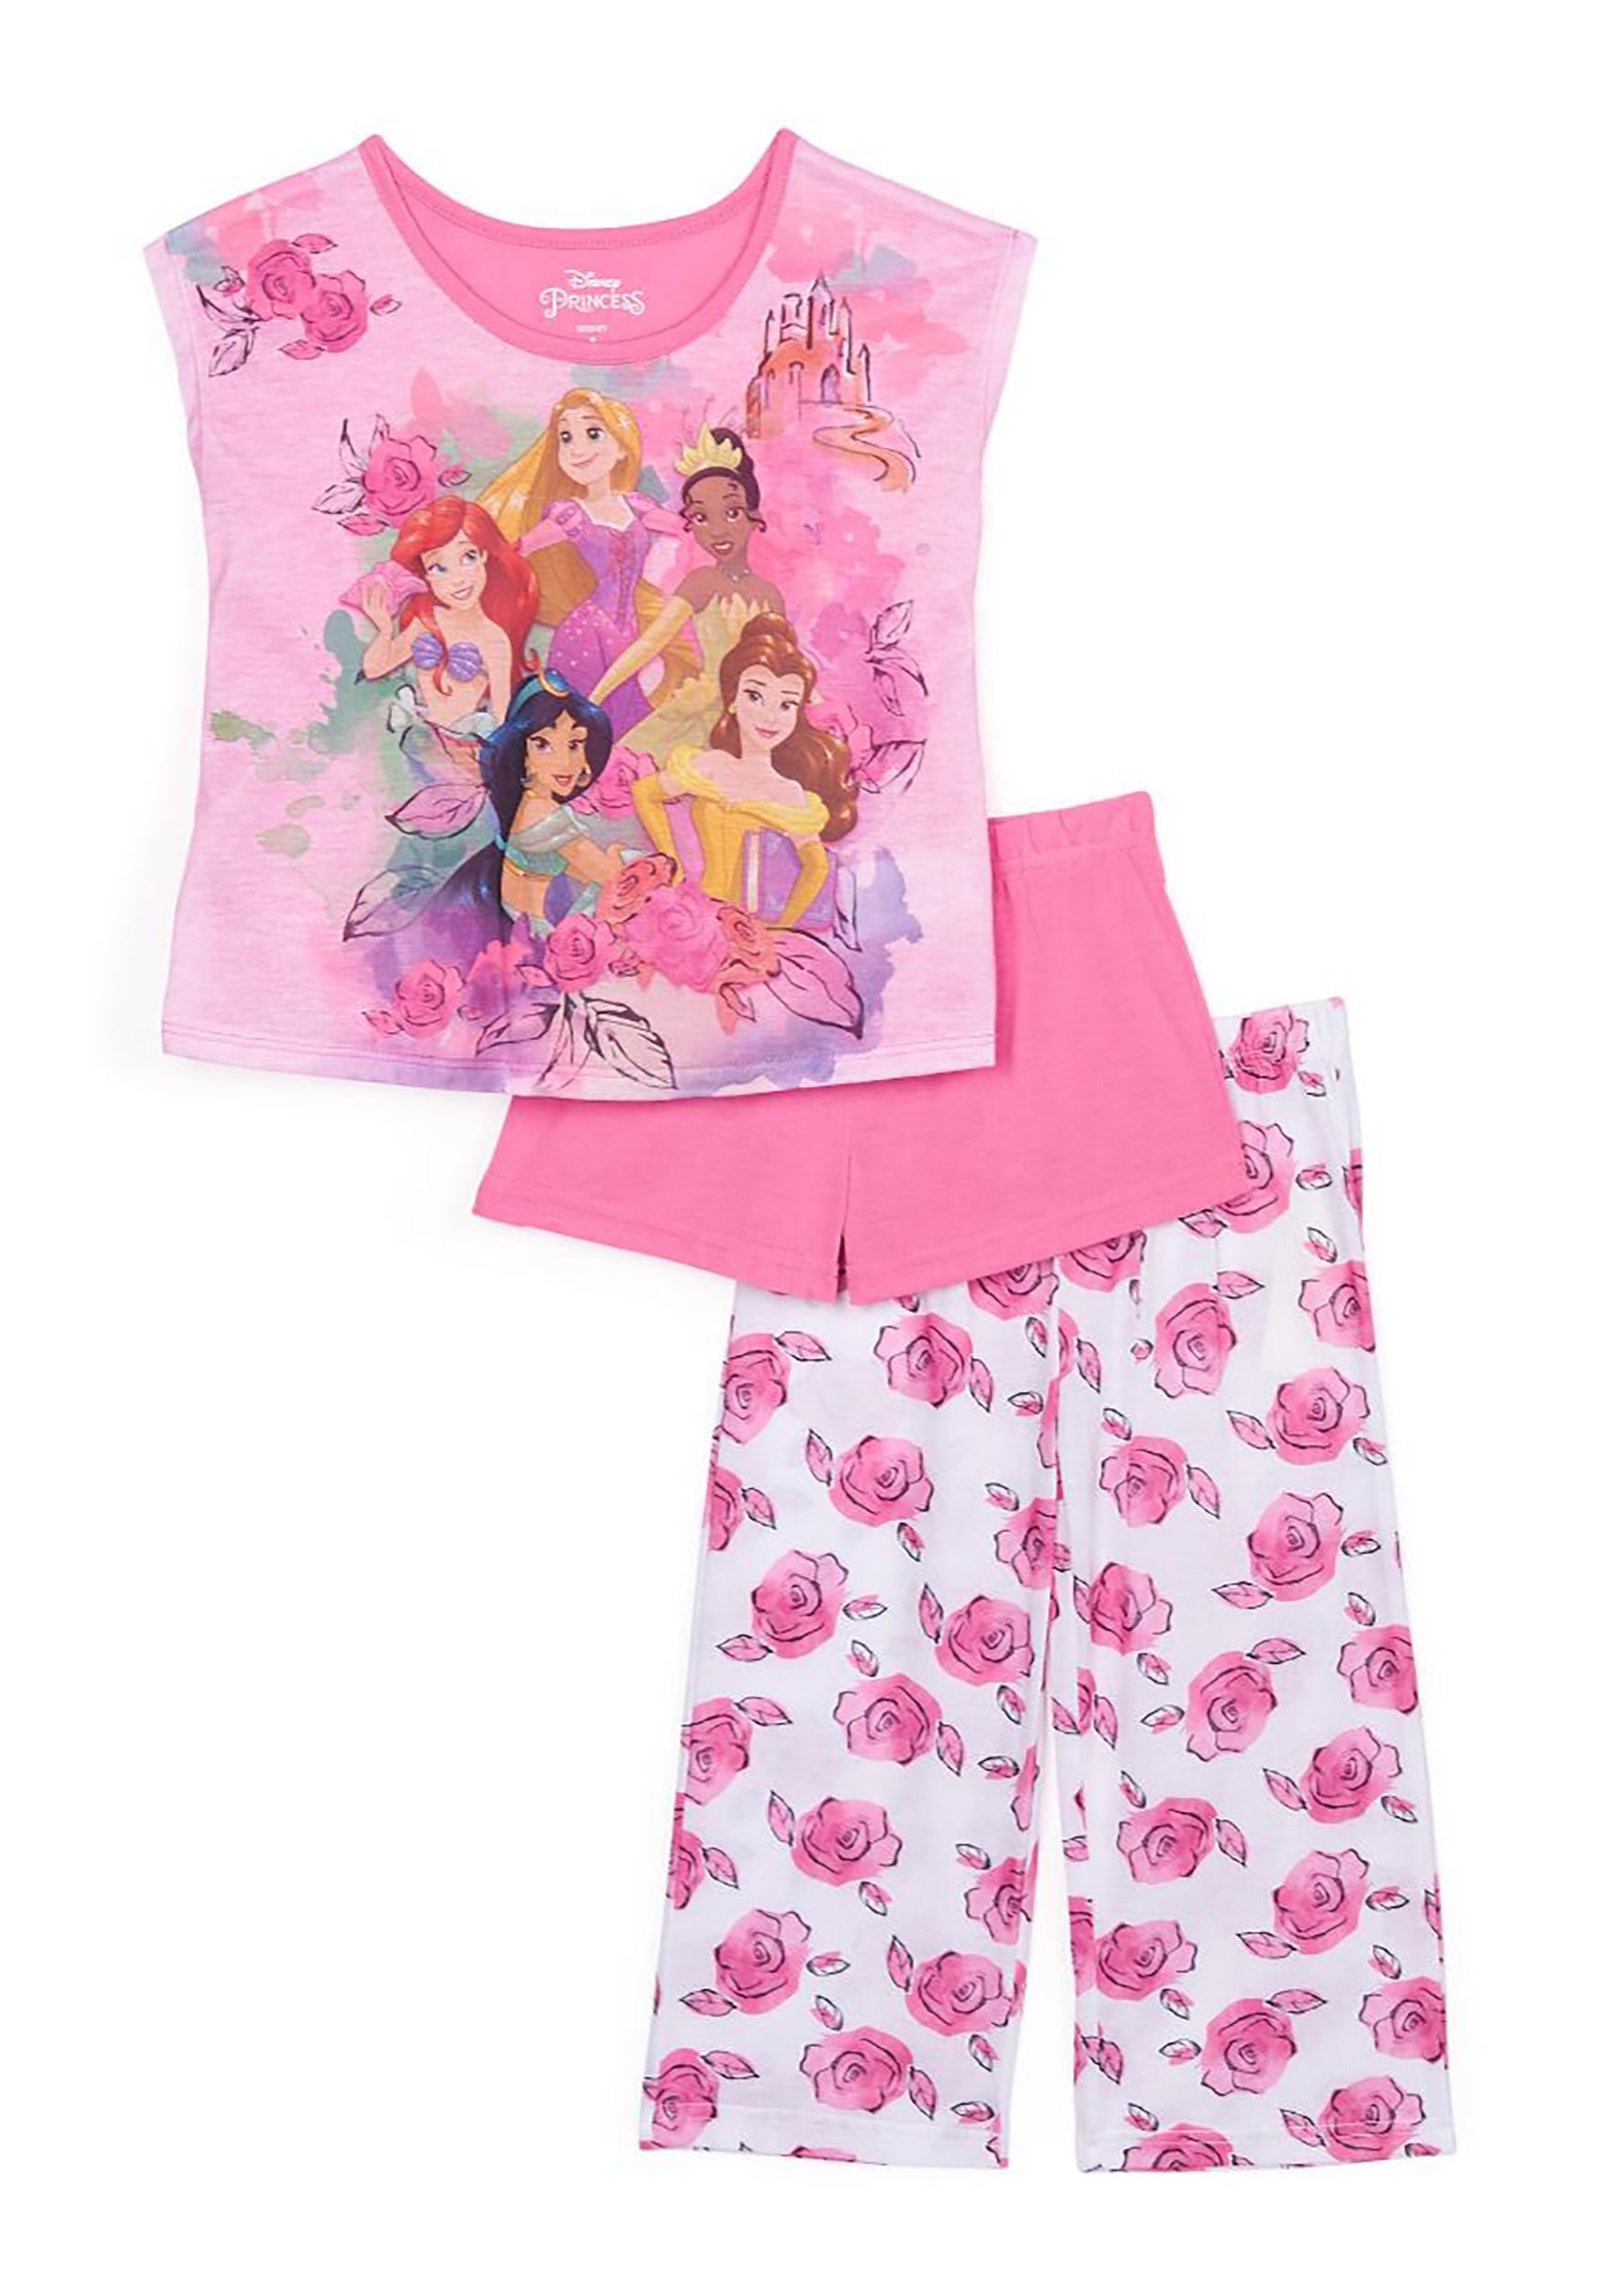 3 Piece Disney Princess Toddler Girls Sleepwear Set